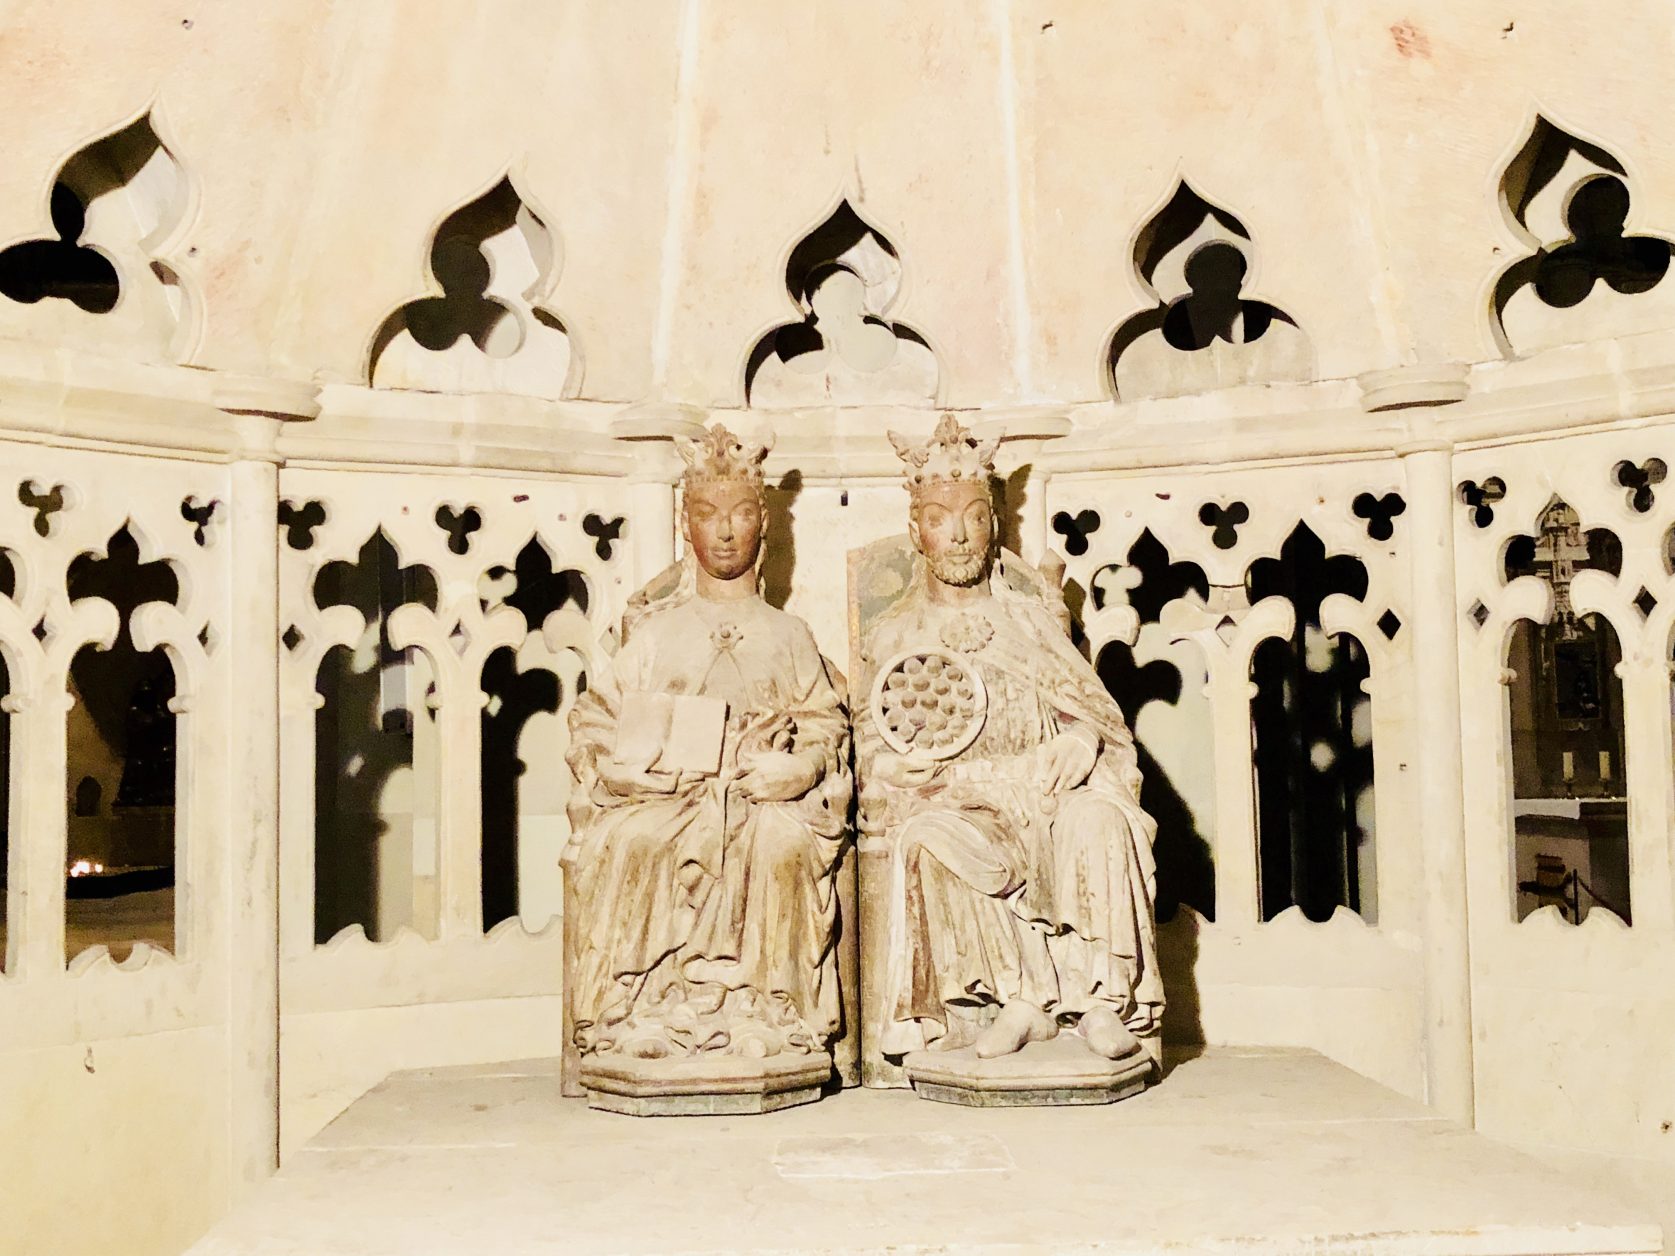 Herrscherpaar, wohl Otto I. und Edgitha von Wessex, Foto: Weirauch